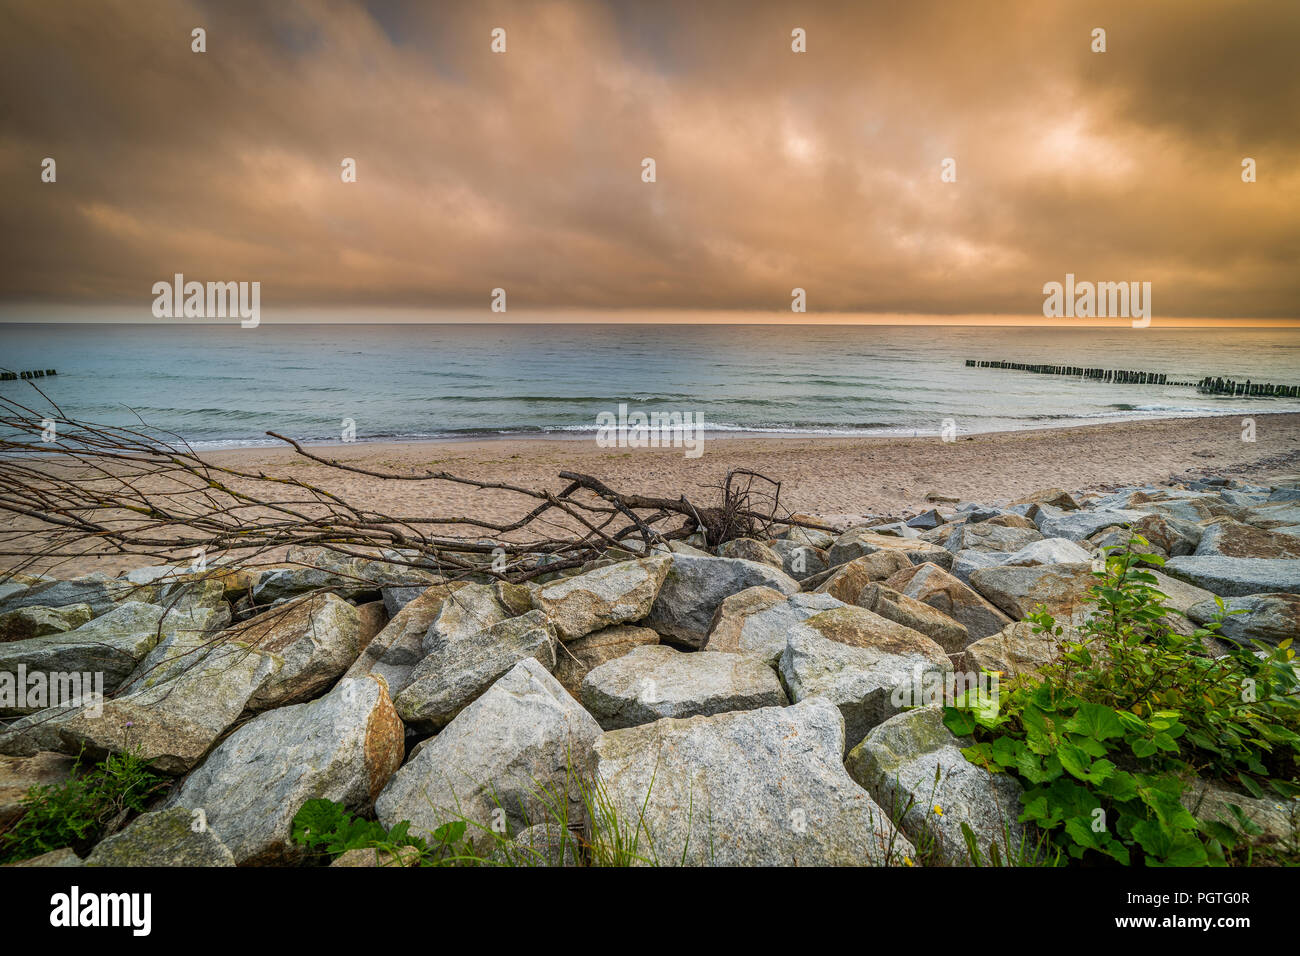 Paesaggio dal mare, legno, pietre, sabbia, onde. arancione cielo nuvoloso Foto Stock